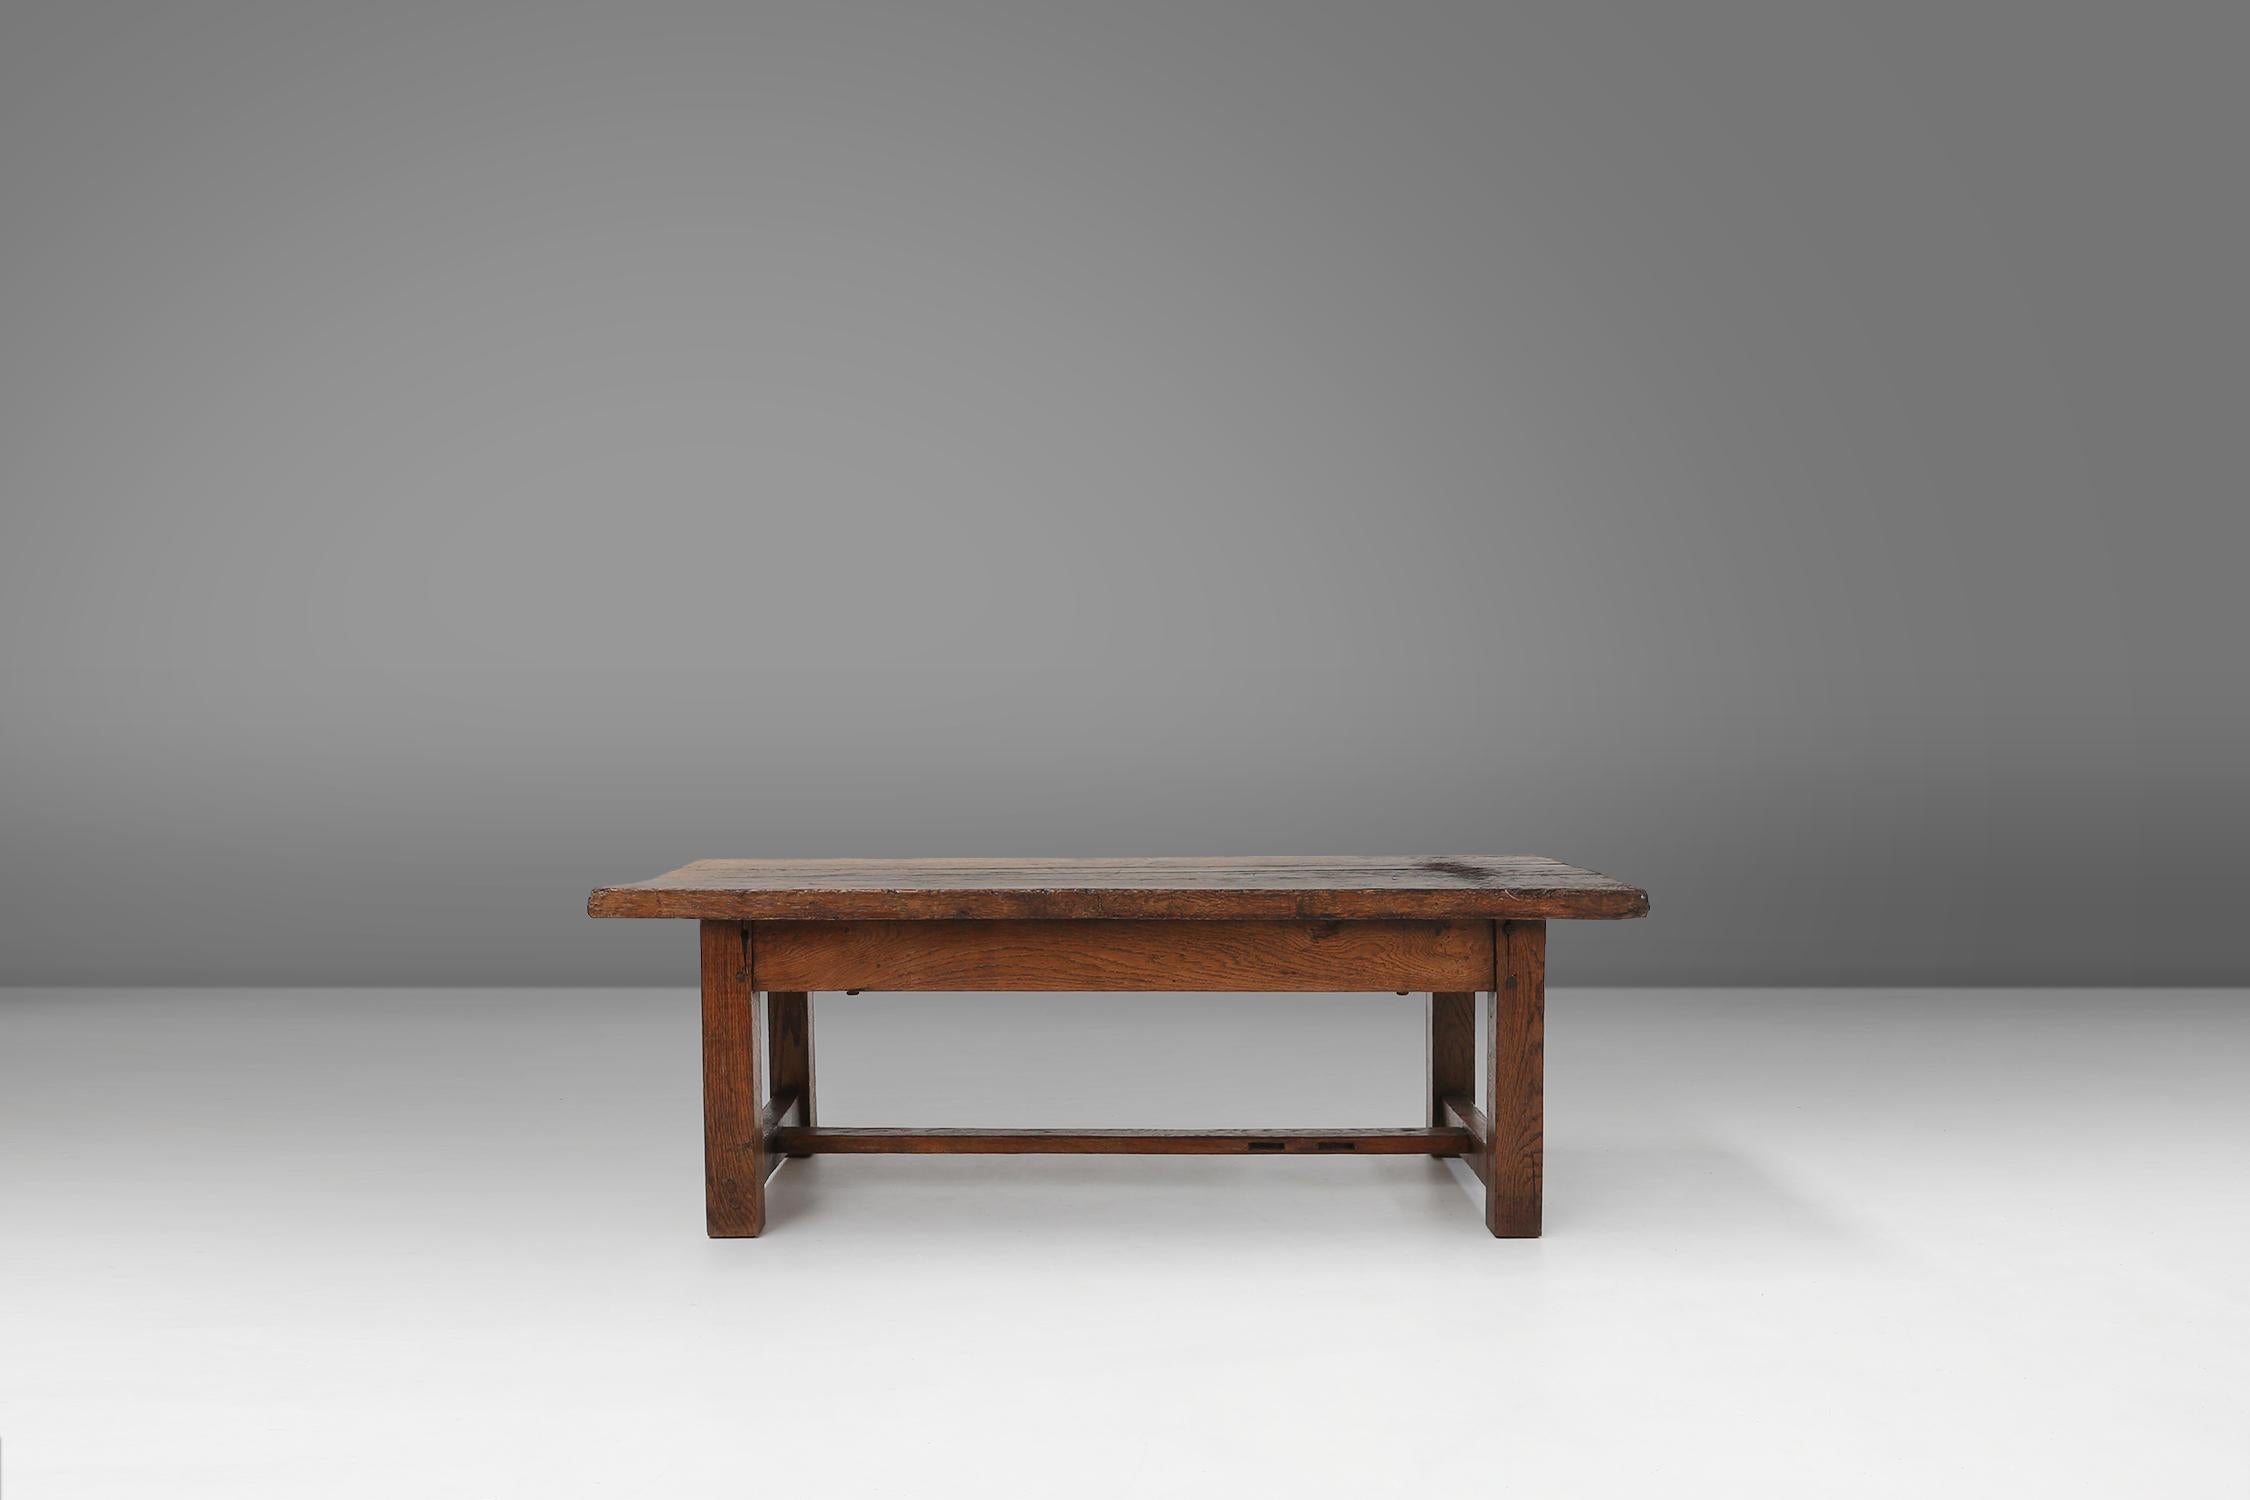 Cette table basse fabriquée en Belgique en 1890 a beaucoup de patine sur le bois, ce qui témoigne de sa longue histoire et de son caractère. Le bois a un aspect très rustique et wabi sabi, c'est-à-dire qu'il apprécie la beauté de l'imparfait et de